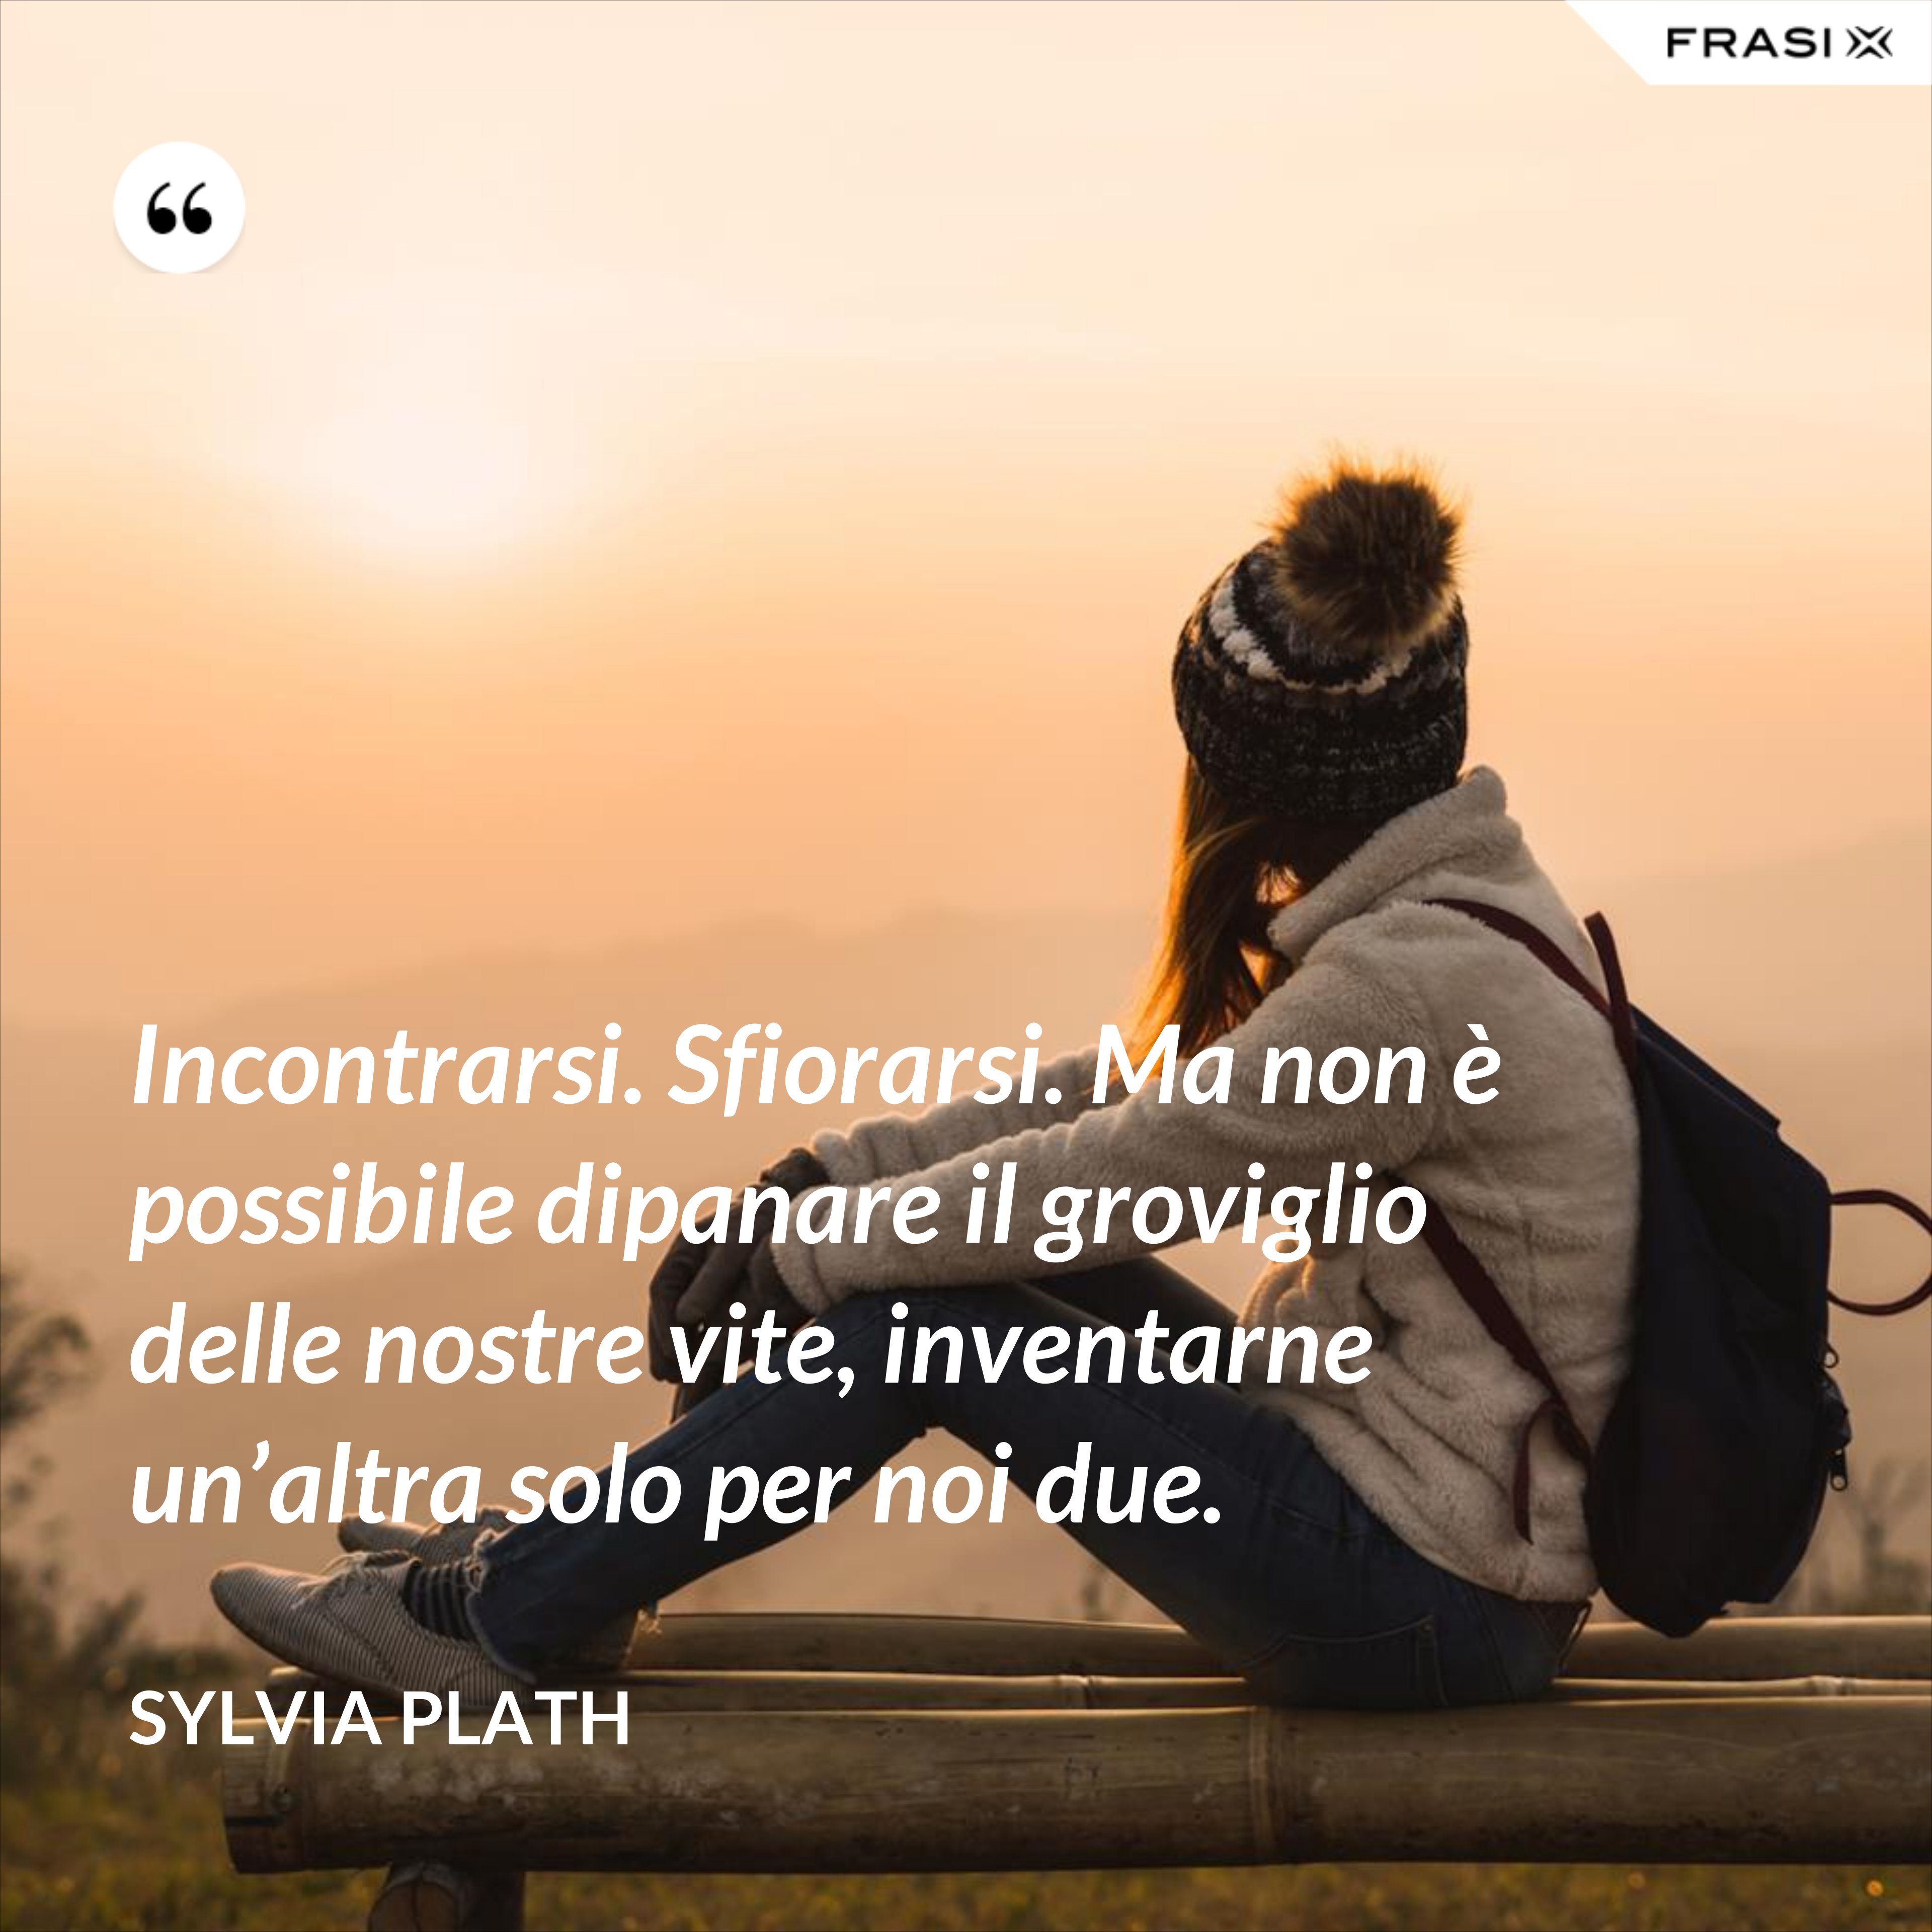 Incontrarsi. Sfiorarsi. Ma non è possibile dipanare il groviglio delle nostre vite, inventarne un’altra solo per noi due. - Sylvia Plath